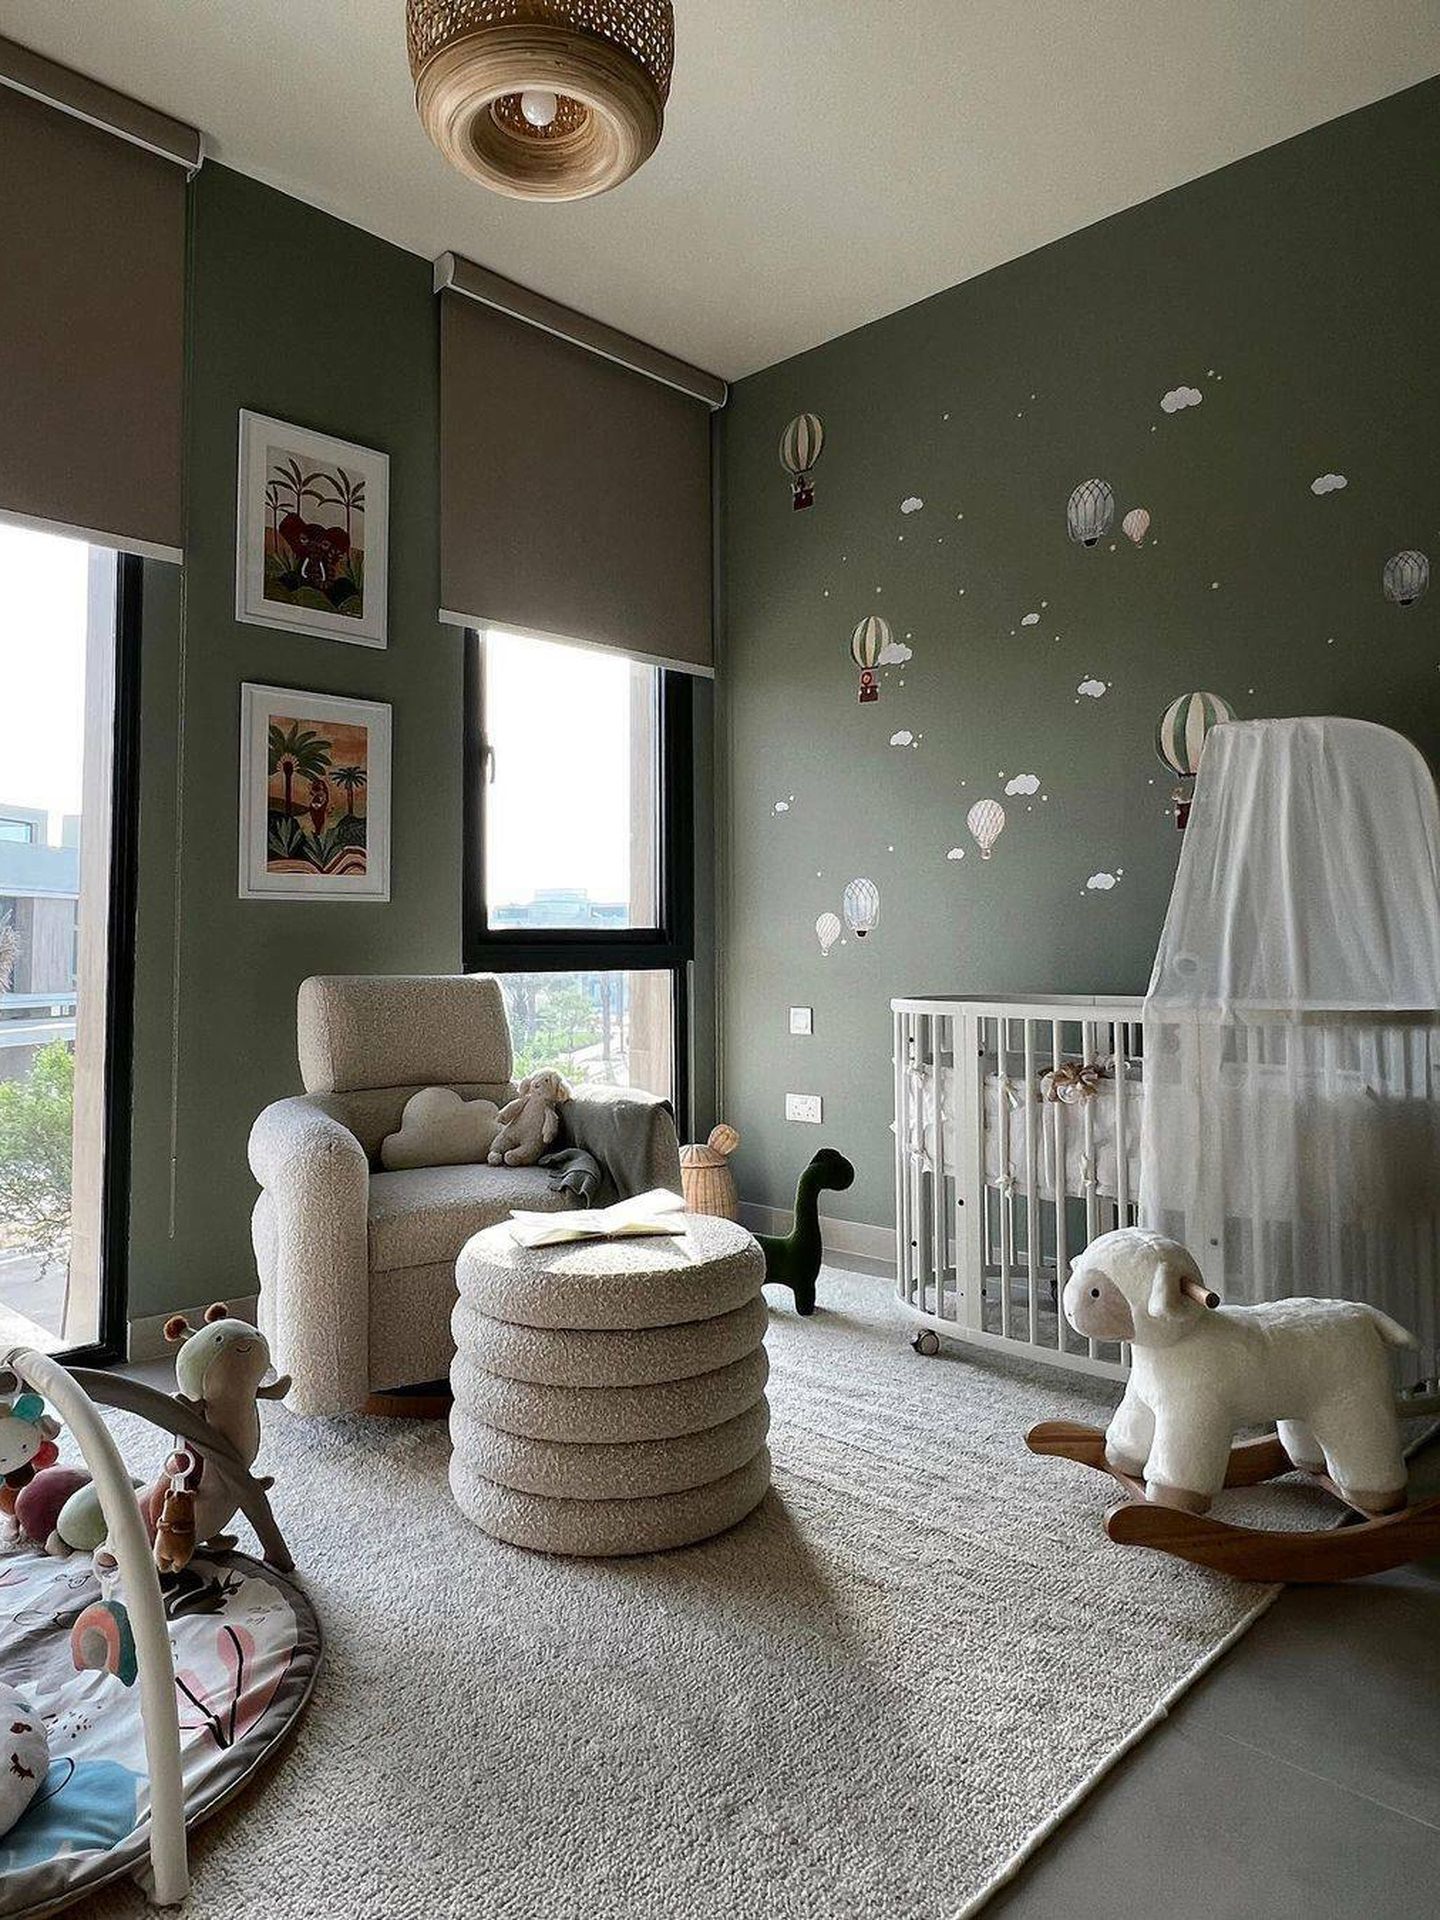 La adorable habitación de su hijo. (Instagram/ @alexandrapereira)